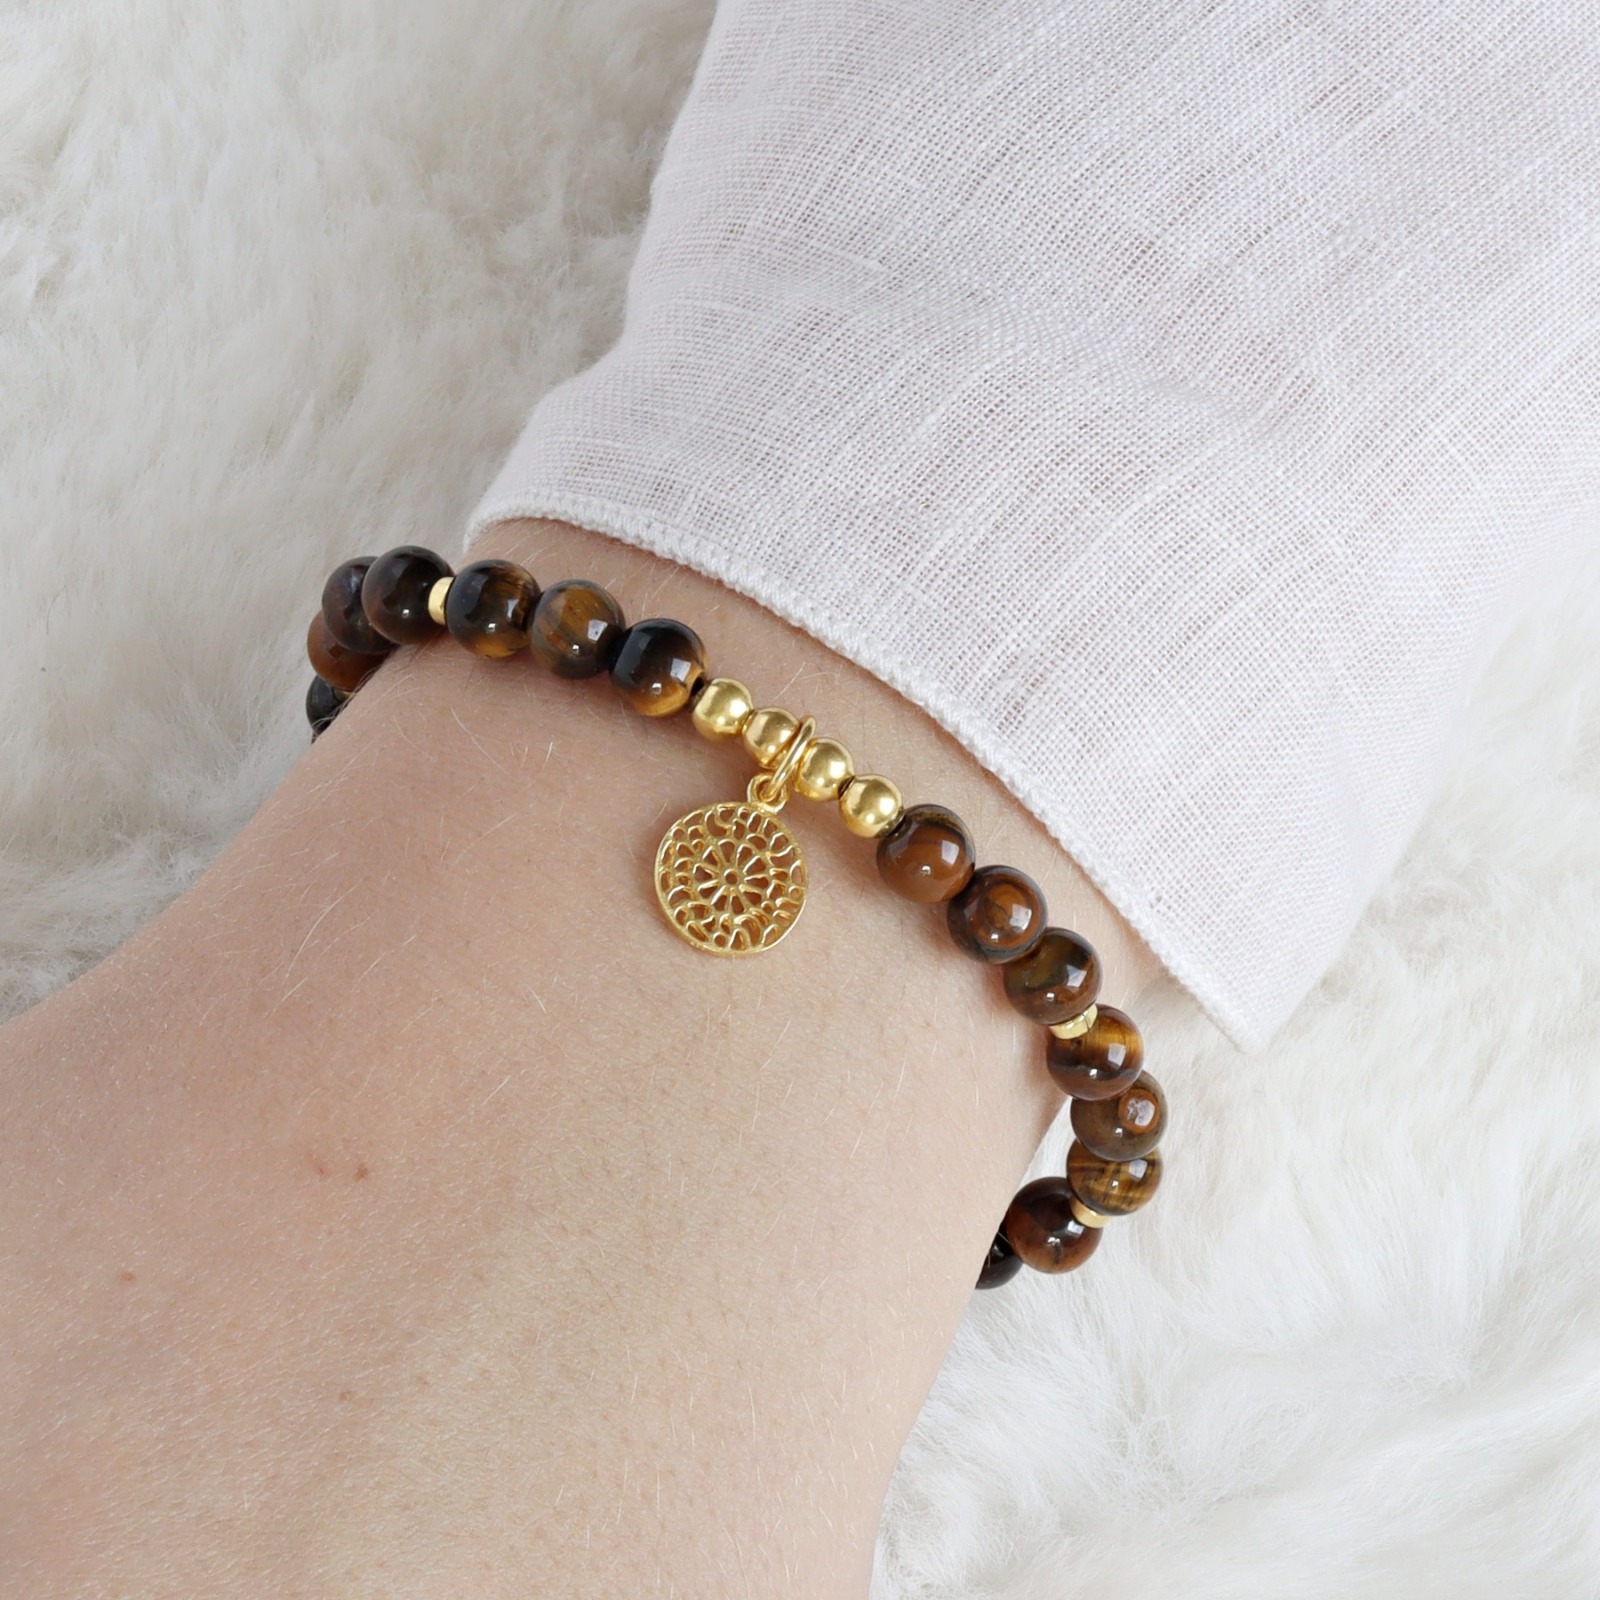 Armband Tigerauge mit Mandala, 725er Silber oder vergoldet, perfektes Geschenk für Frauen